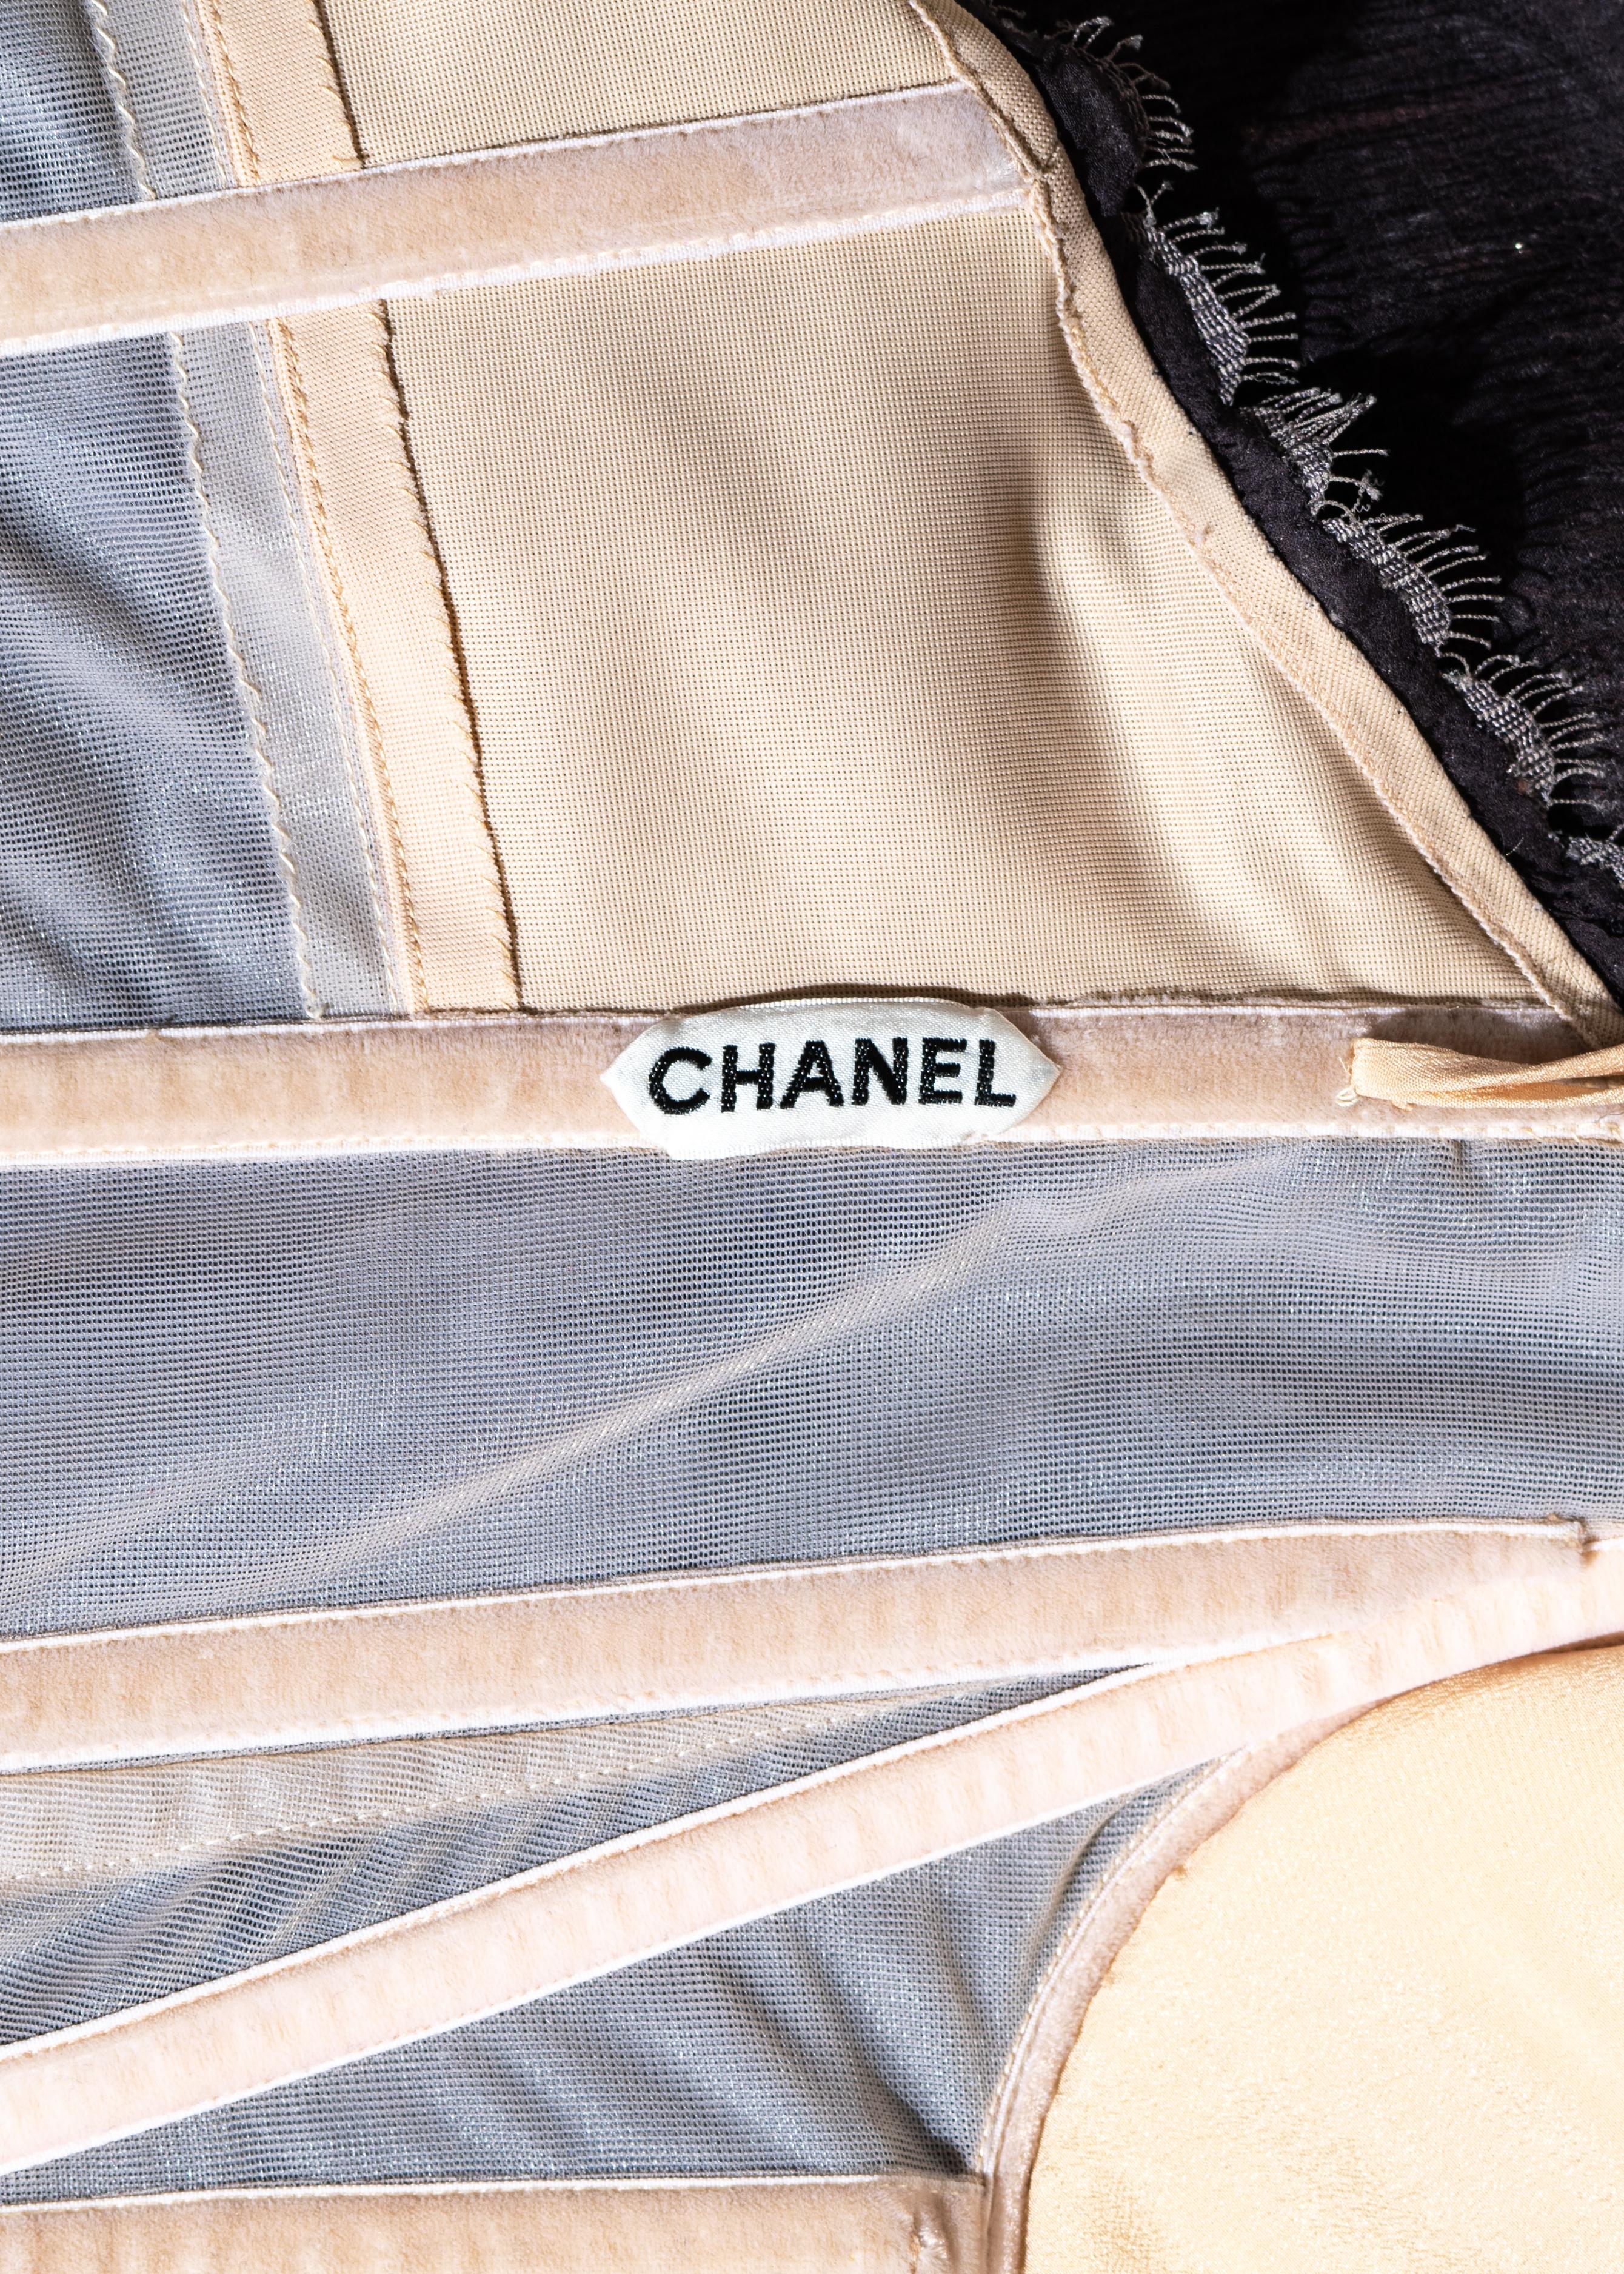 Tailleur pantalon en dentelle brodée mauve haute couture Chanel by Karl Lagerfeld, A/H 2002 5